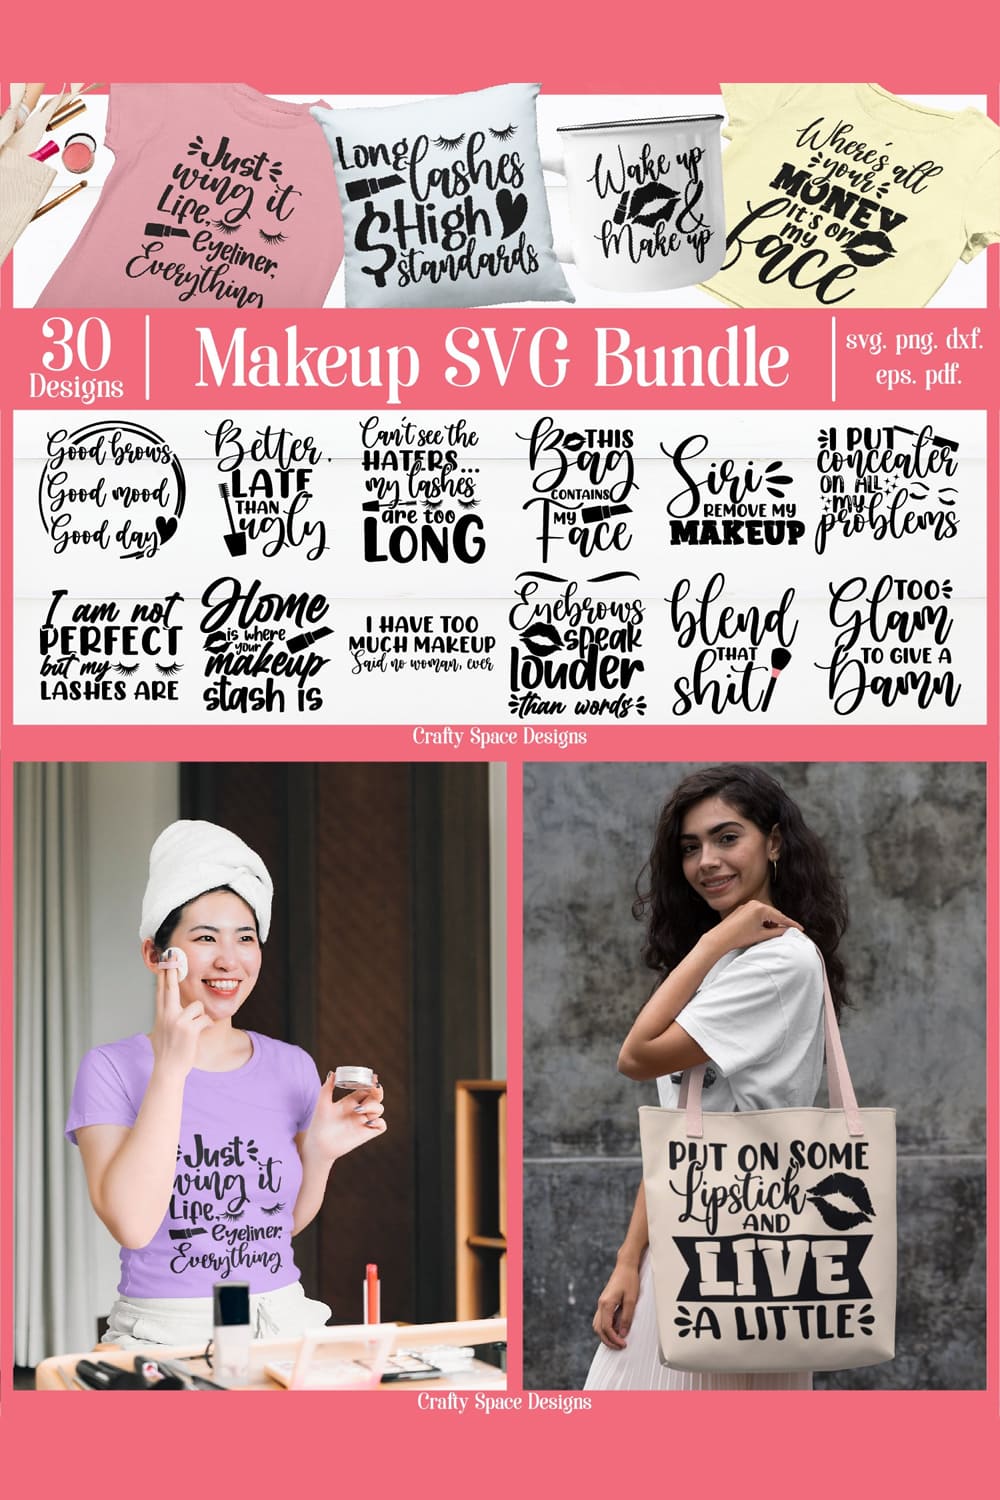 Makeup SVG Bundle - 30 Designs pinterest image.